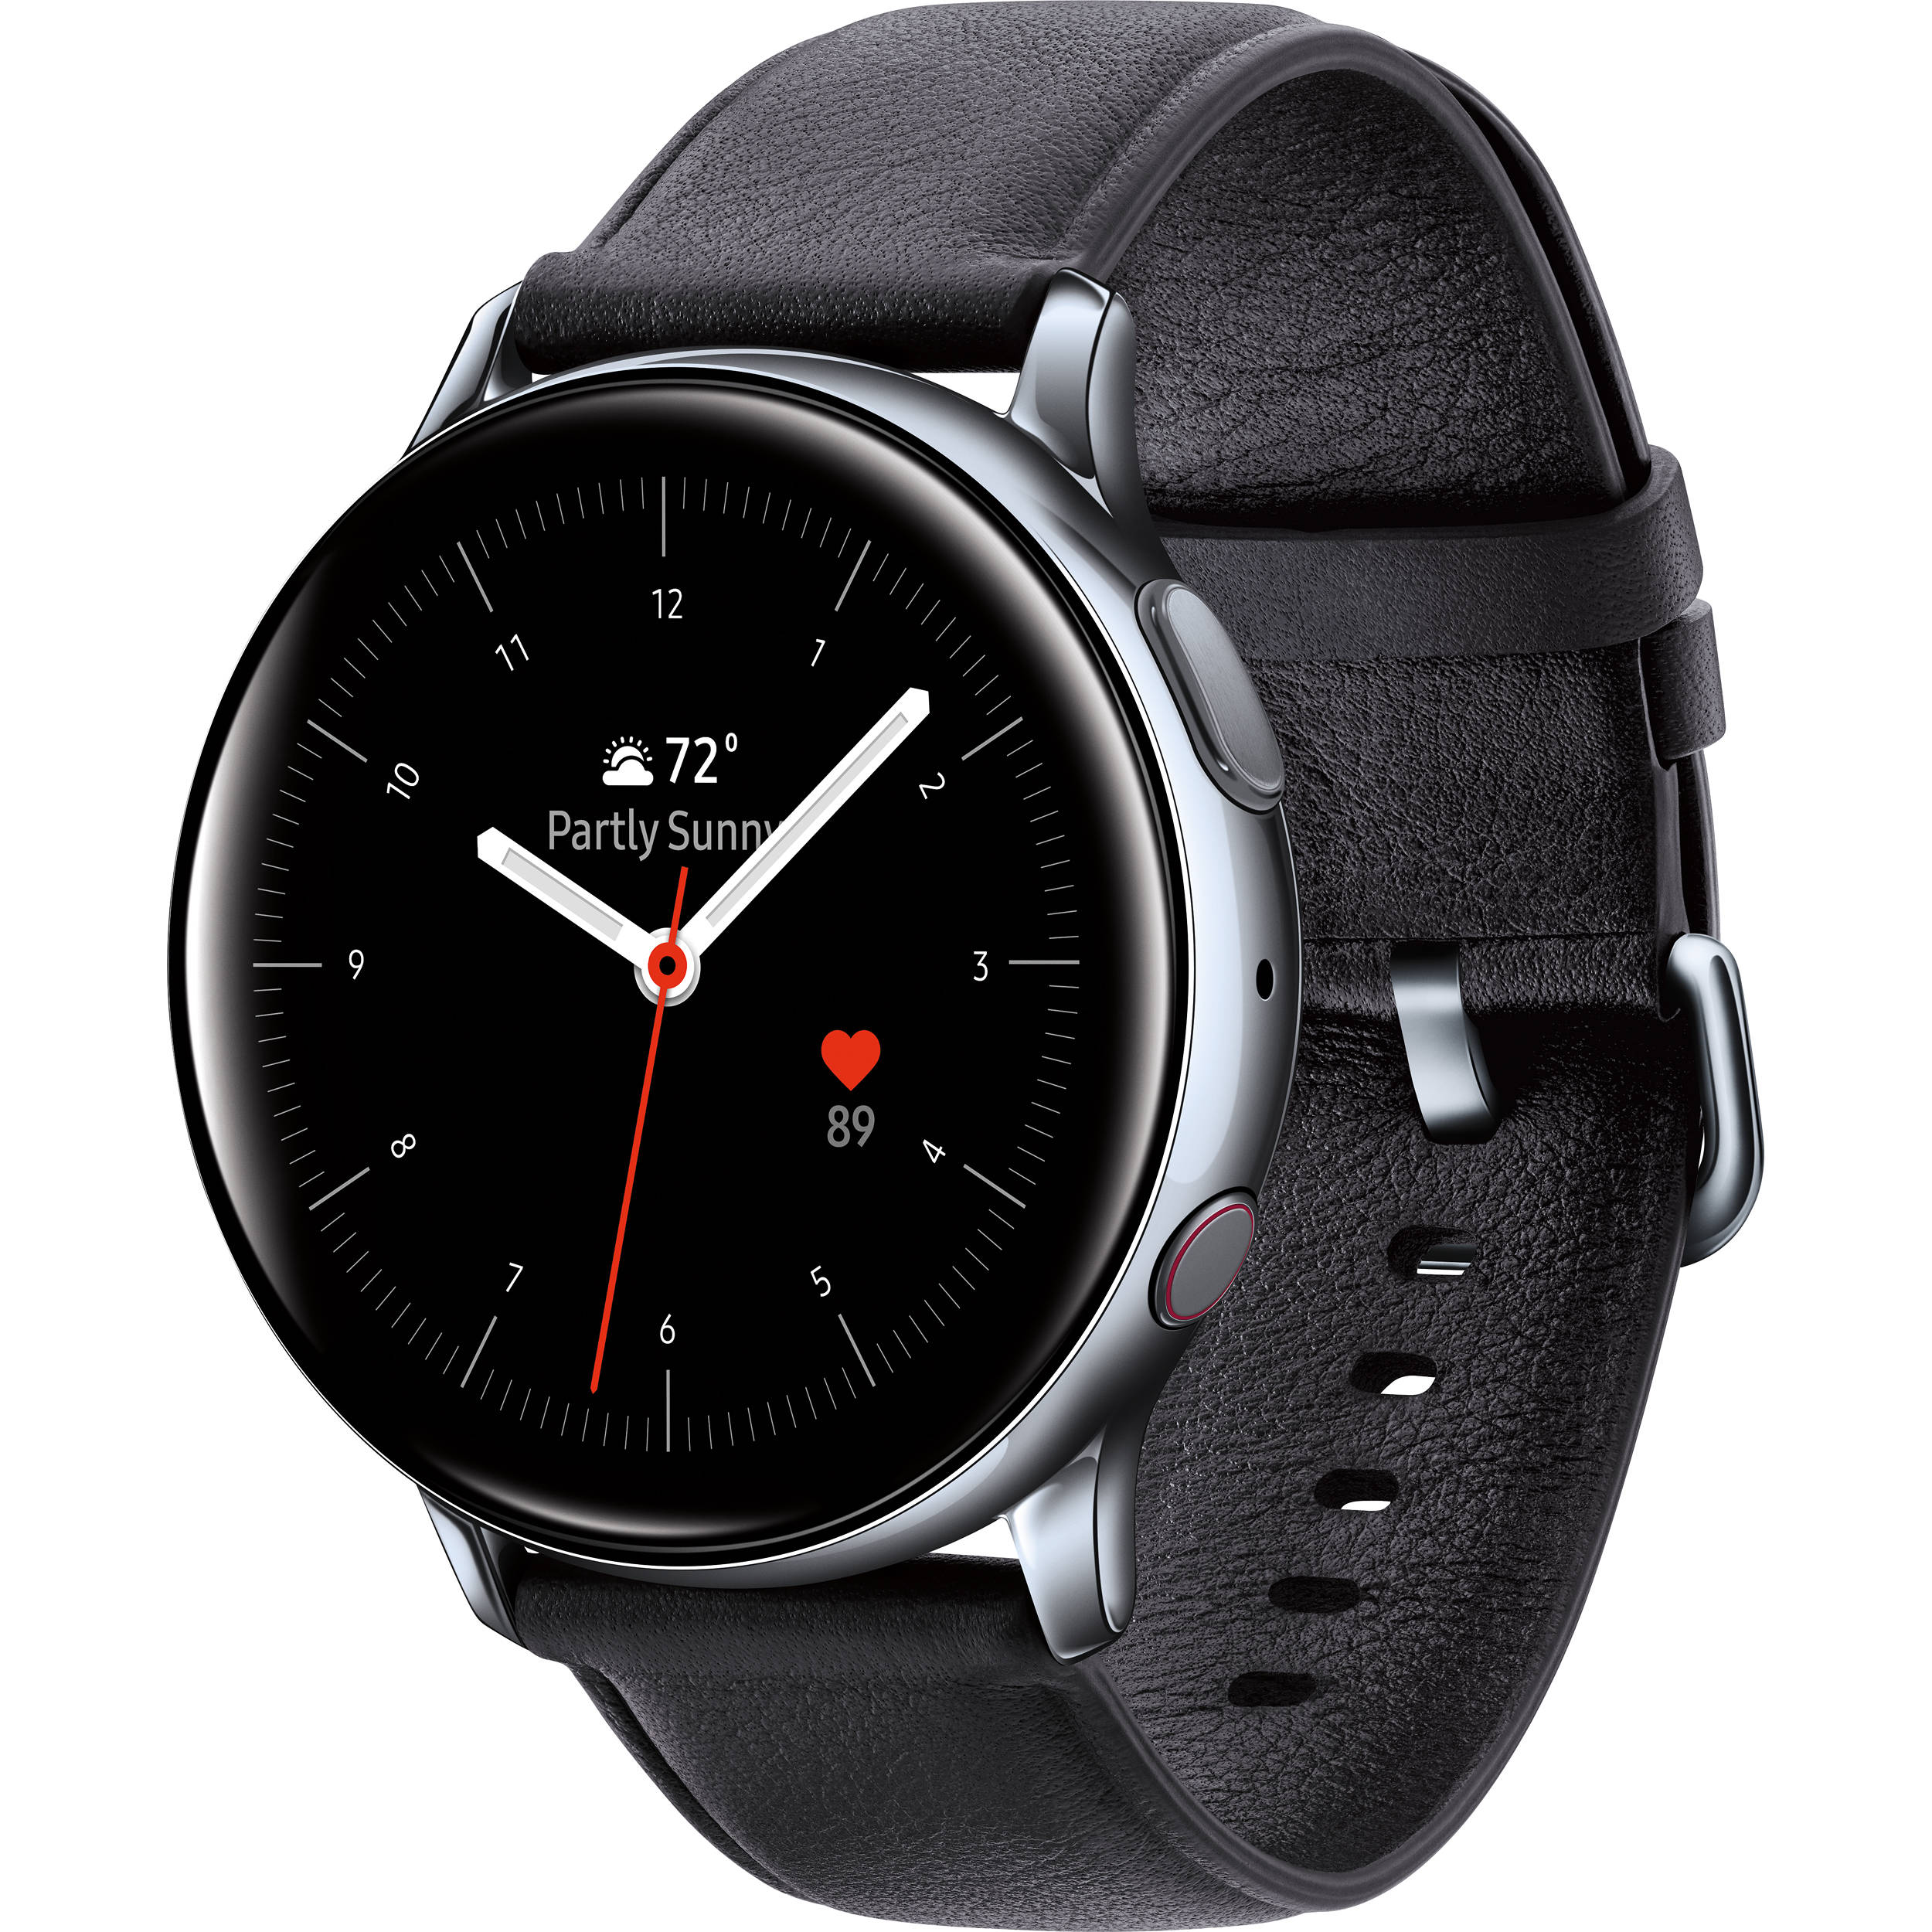 Samsung Galaxy Watch Active2 Lte Smartwatch Sm R835ussaxar B H